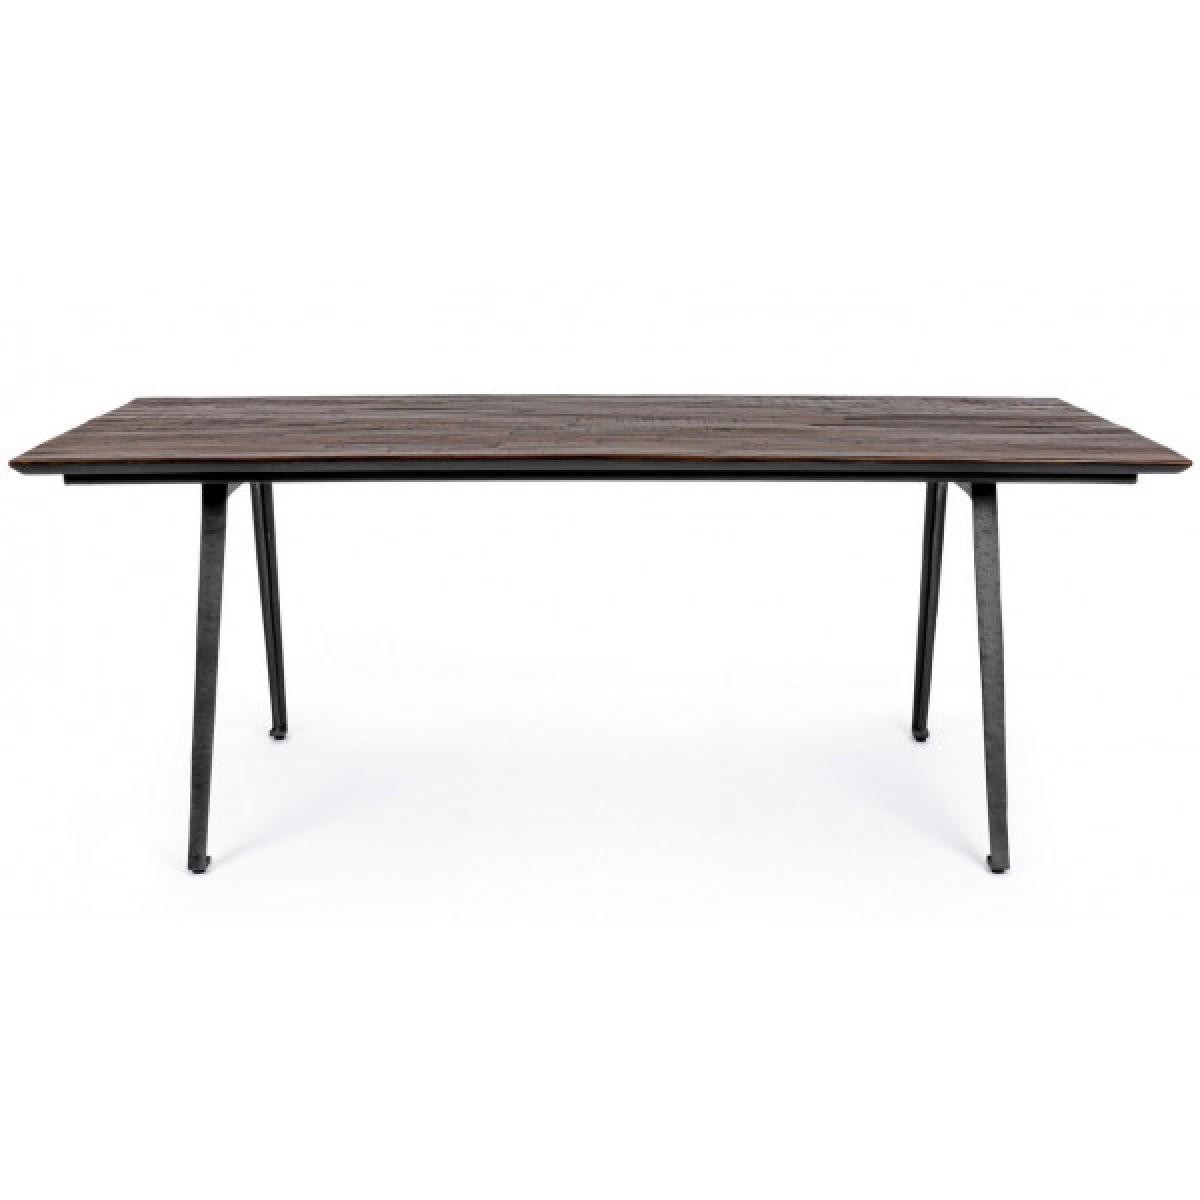 Mathi Design - KANSAS - Table design de repas interieur/exterieur - Tables à manger